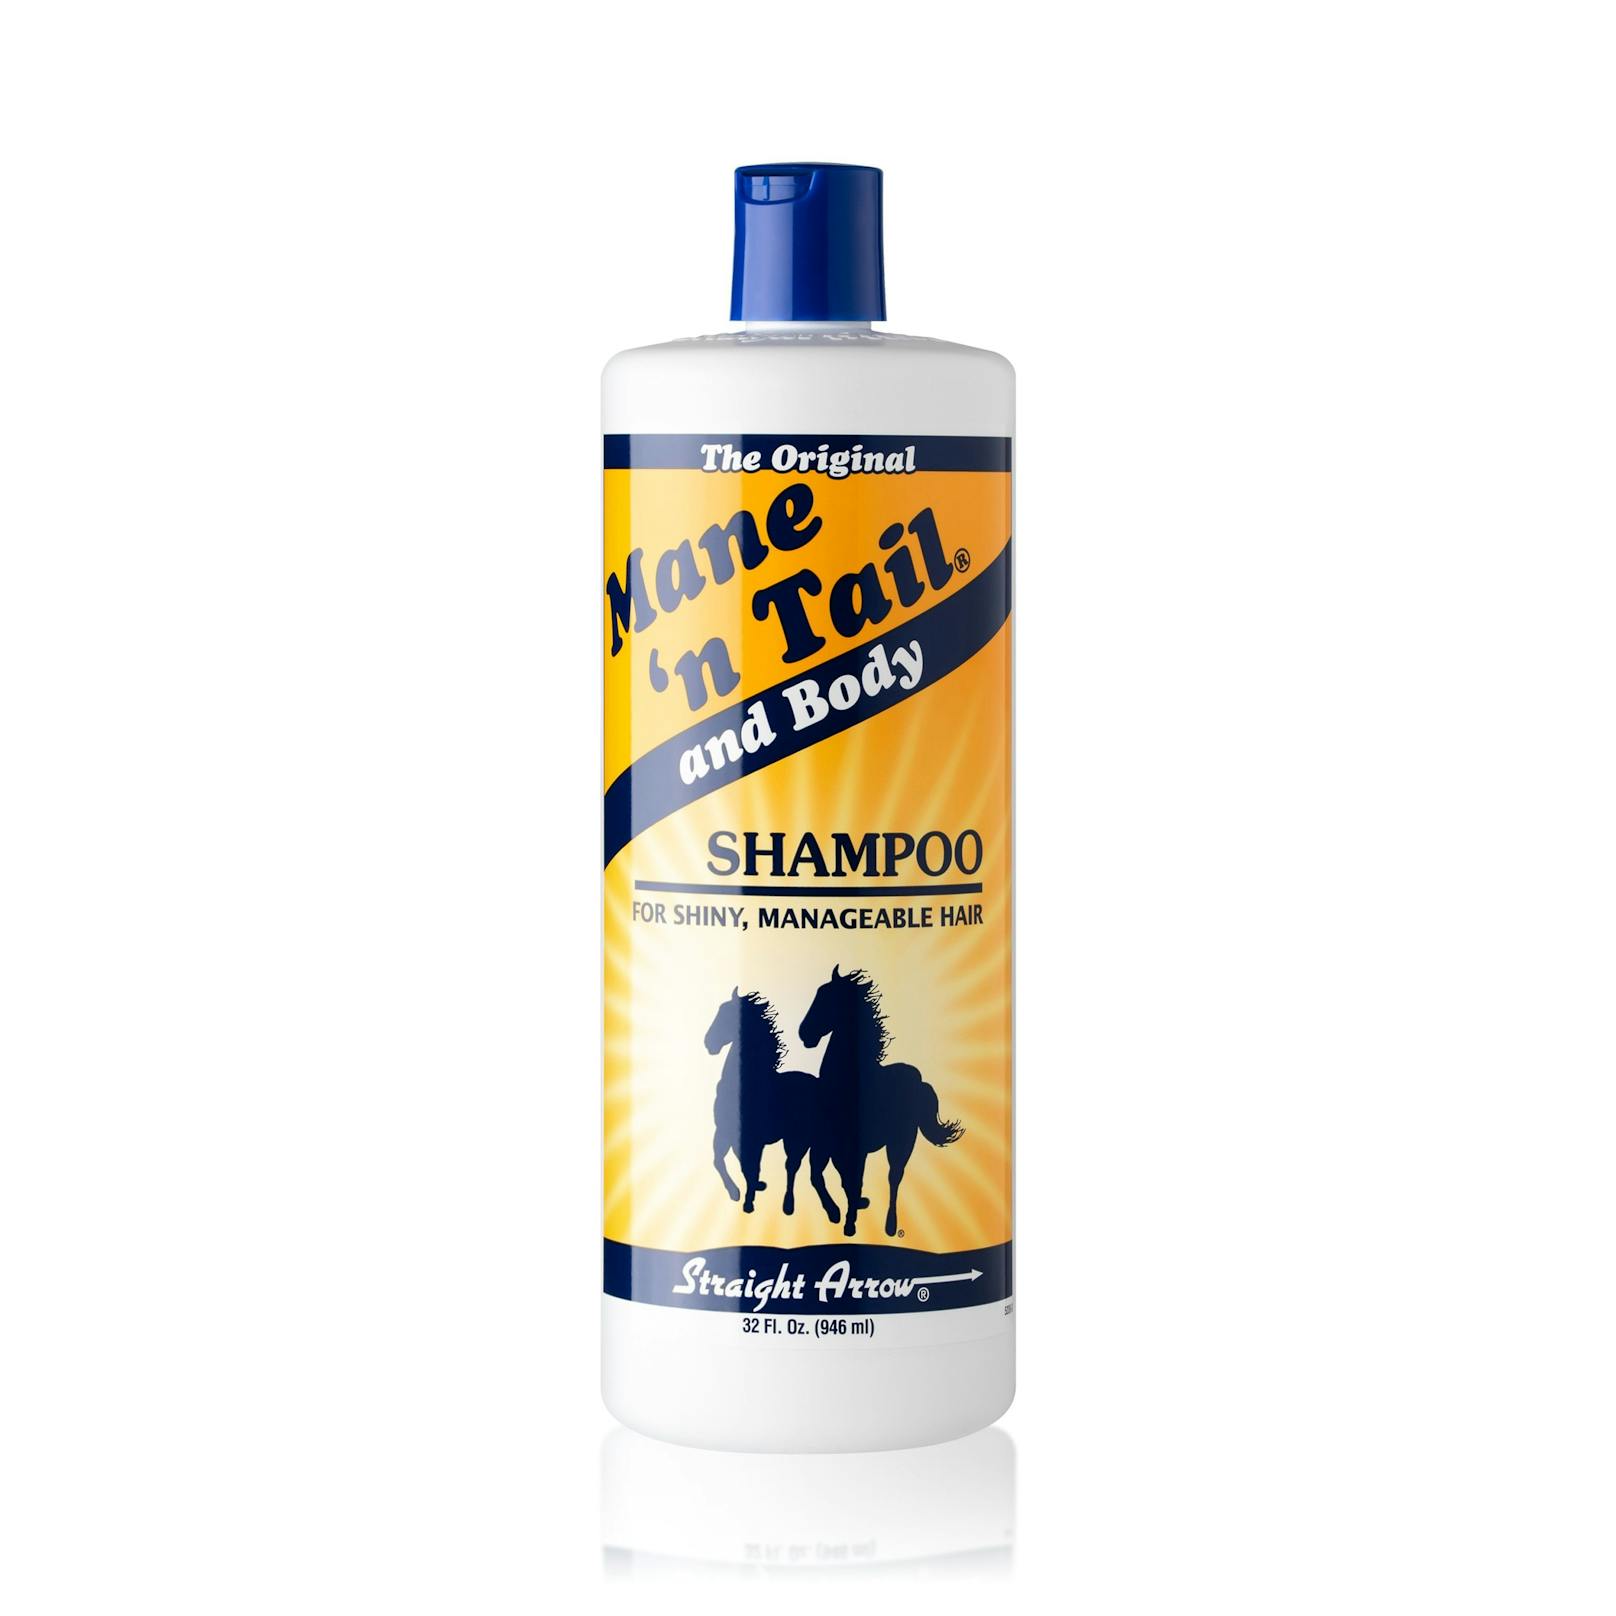 Mane 'n Tail: Die Pferdeshampoo-Marke hat auch menschliche Kunden